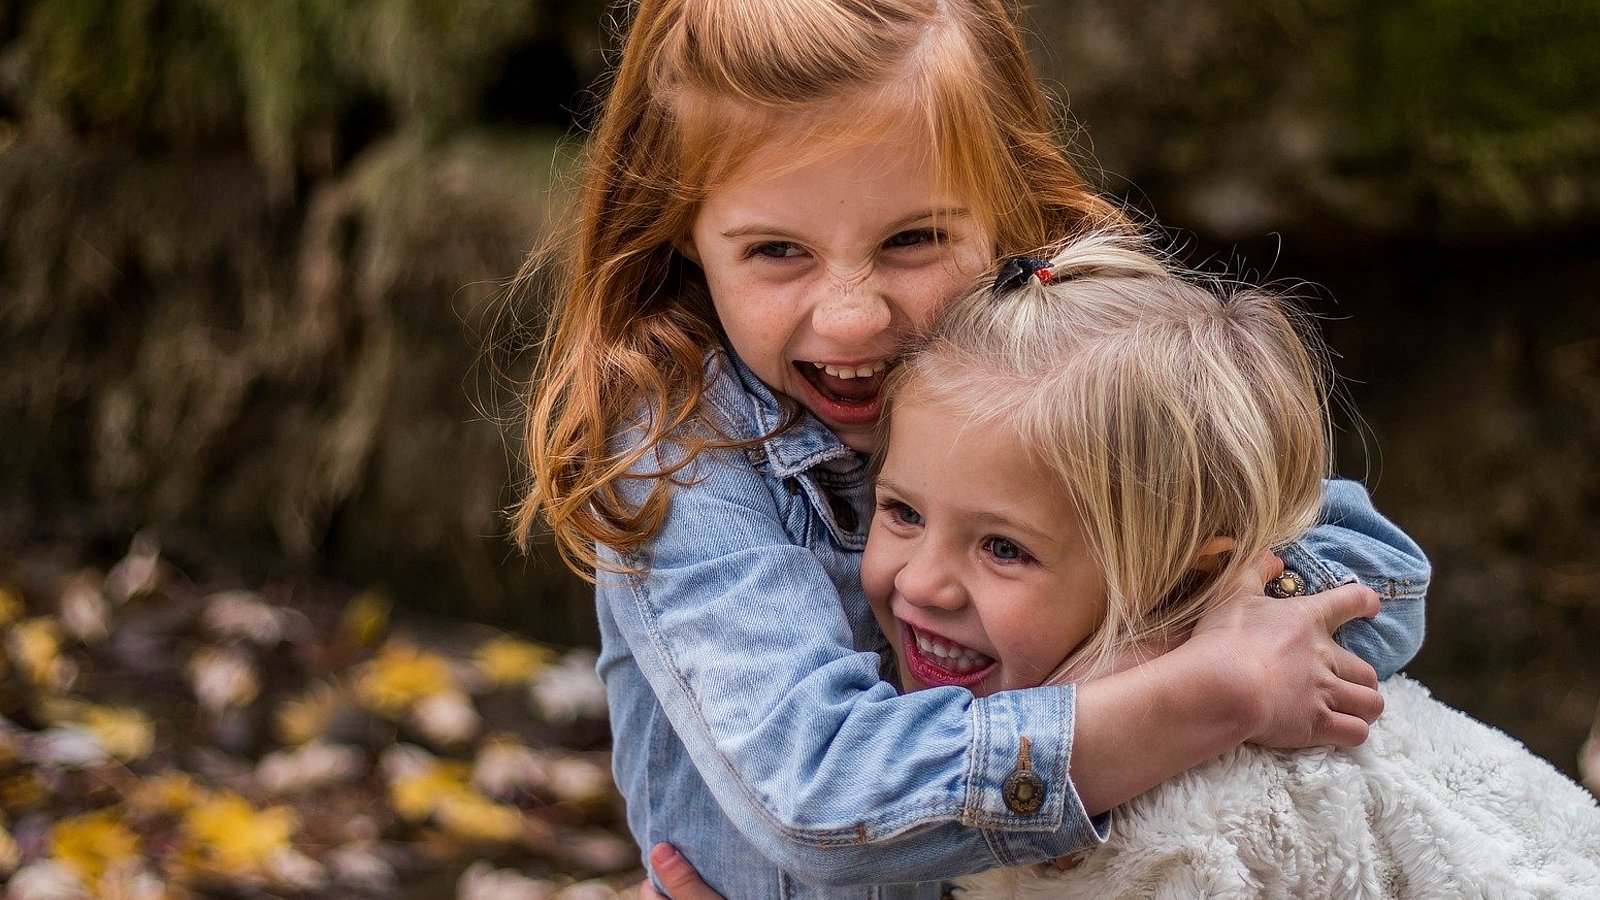 Zwei kleine Mädchen umarmen sich innig und lachen.